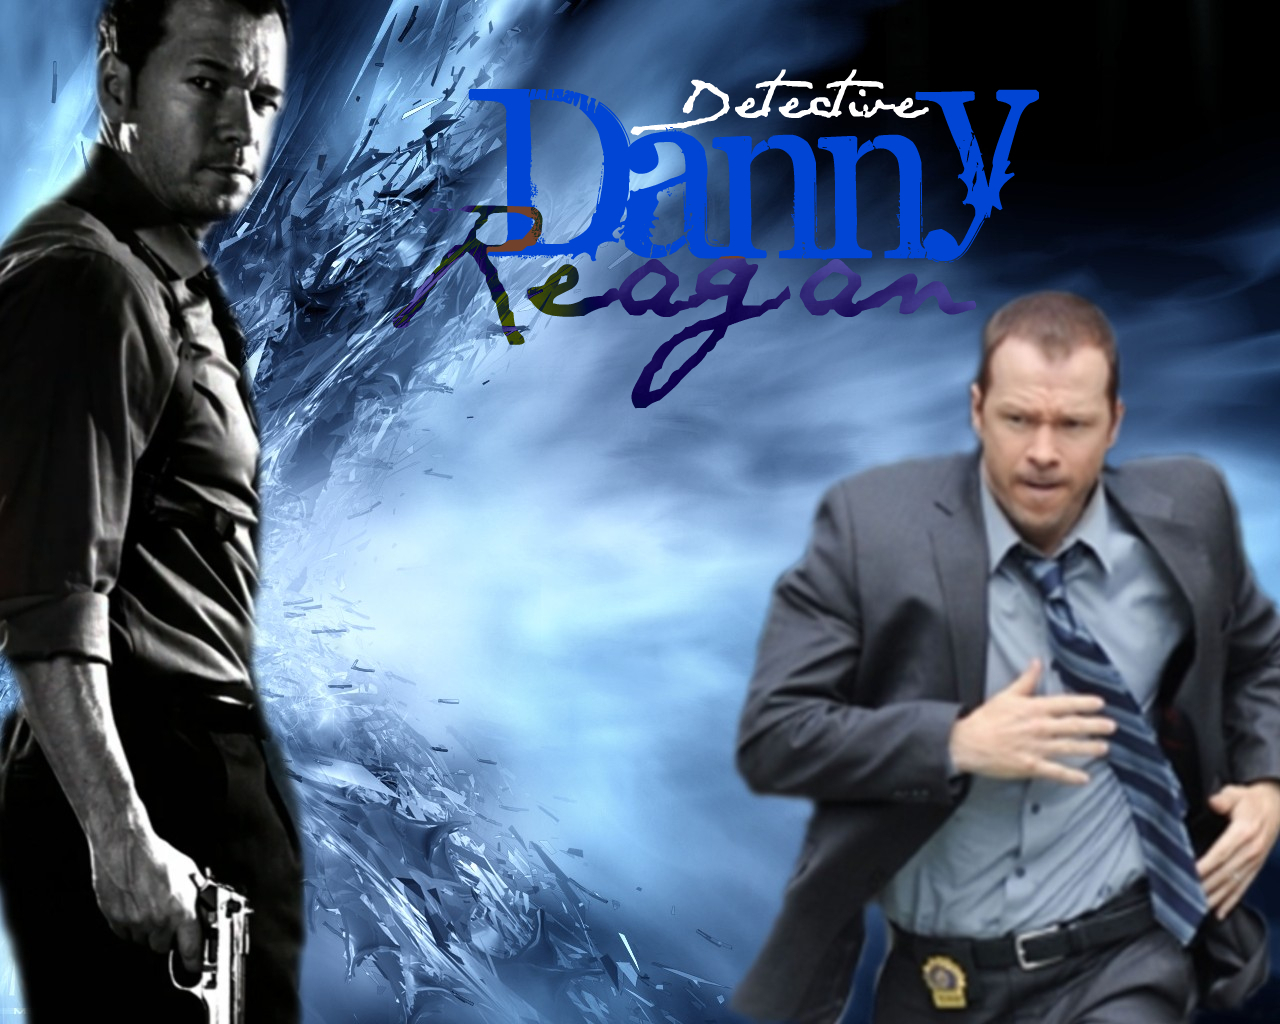 Danny Reagan